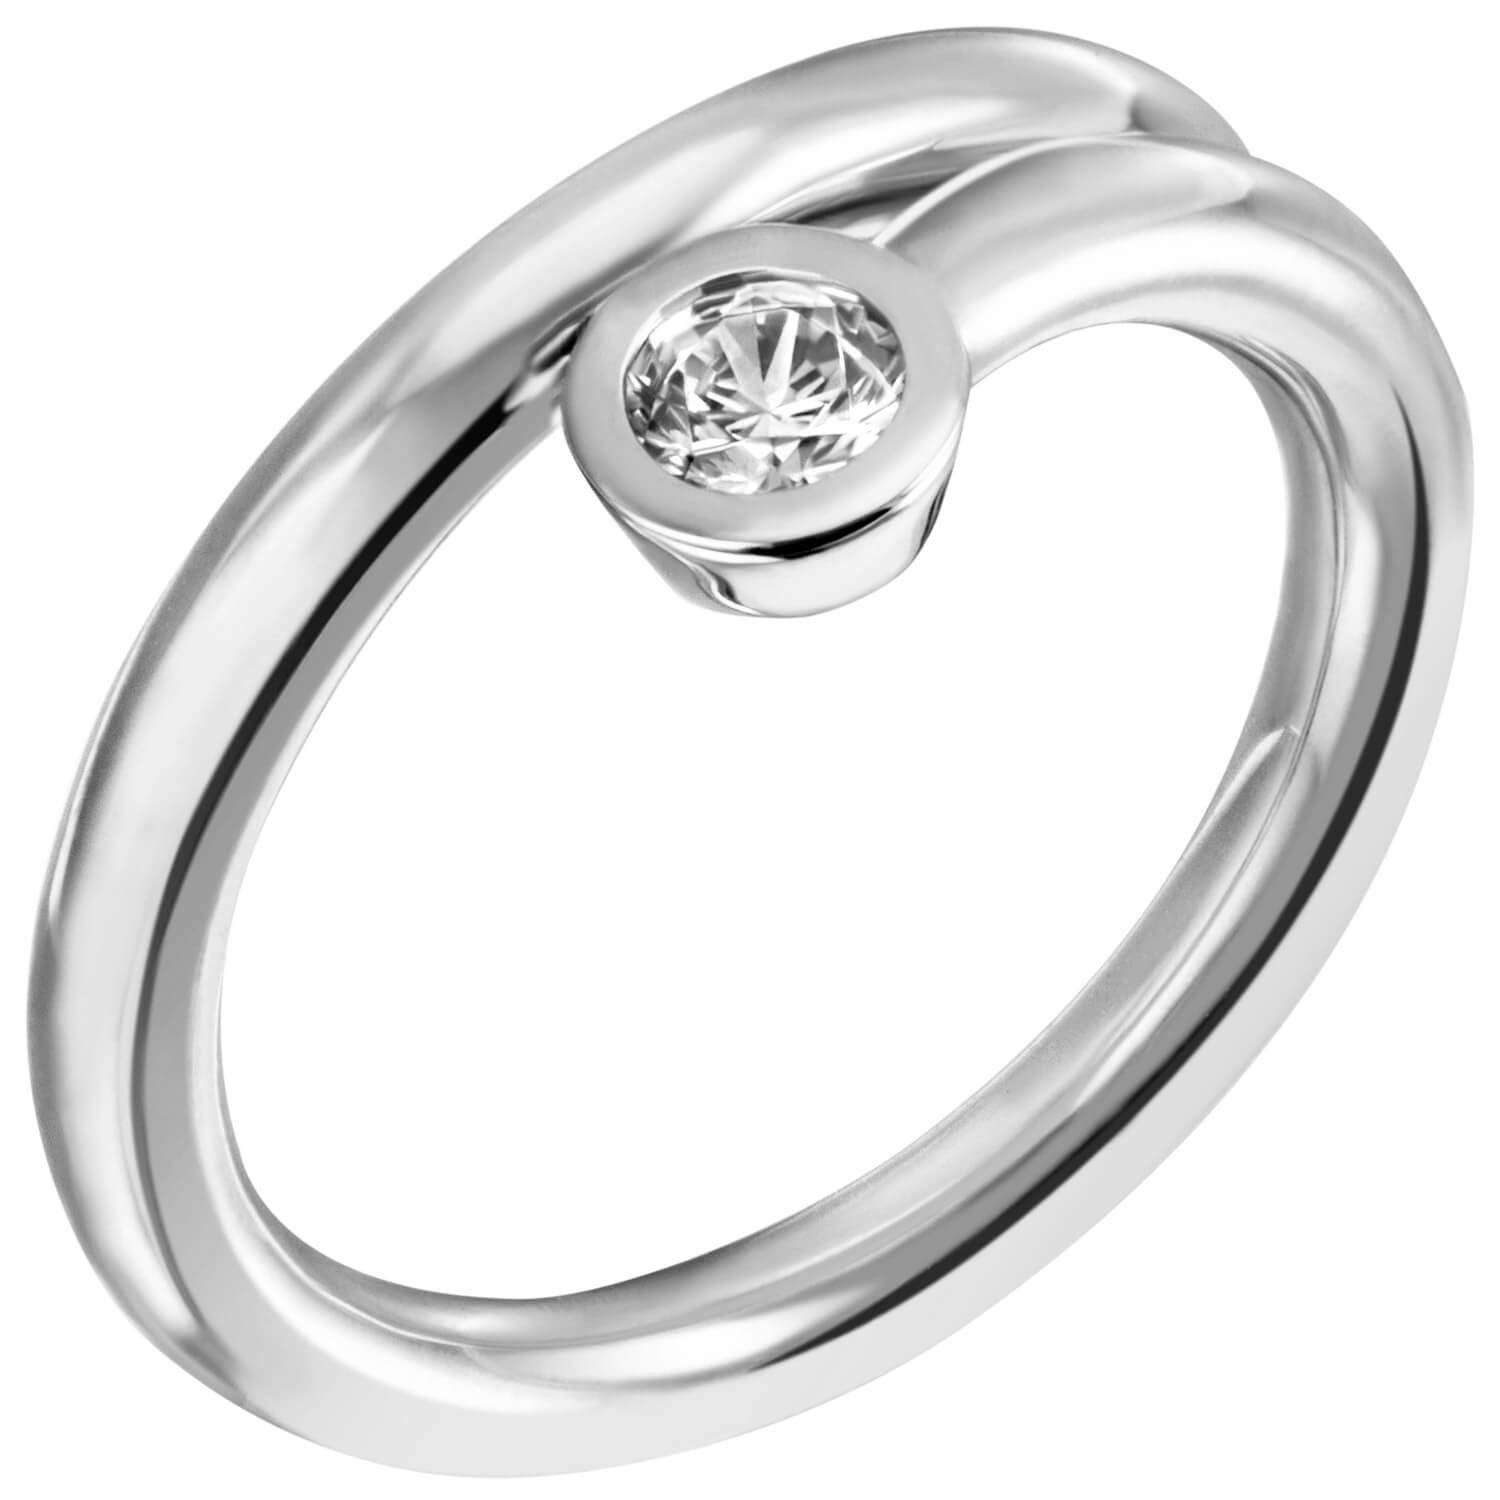 Schmuck Krone Silberring Solitär Ring Damenring mit Zirkonia weiß 925 Silber spiralförmig schlicht, Silber 925